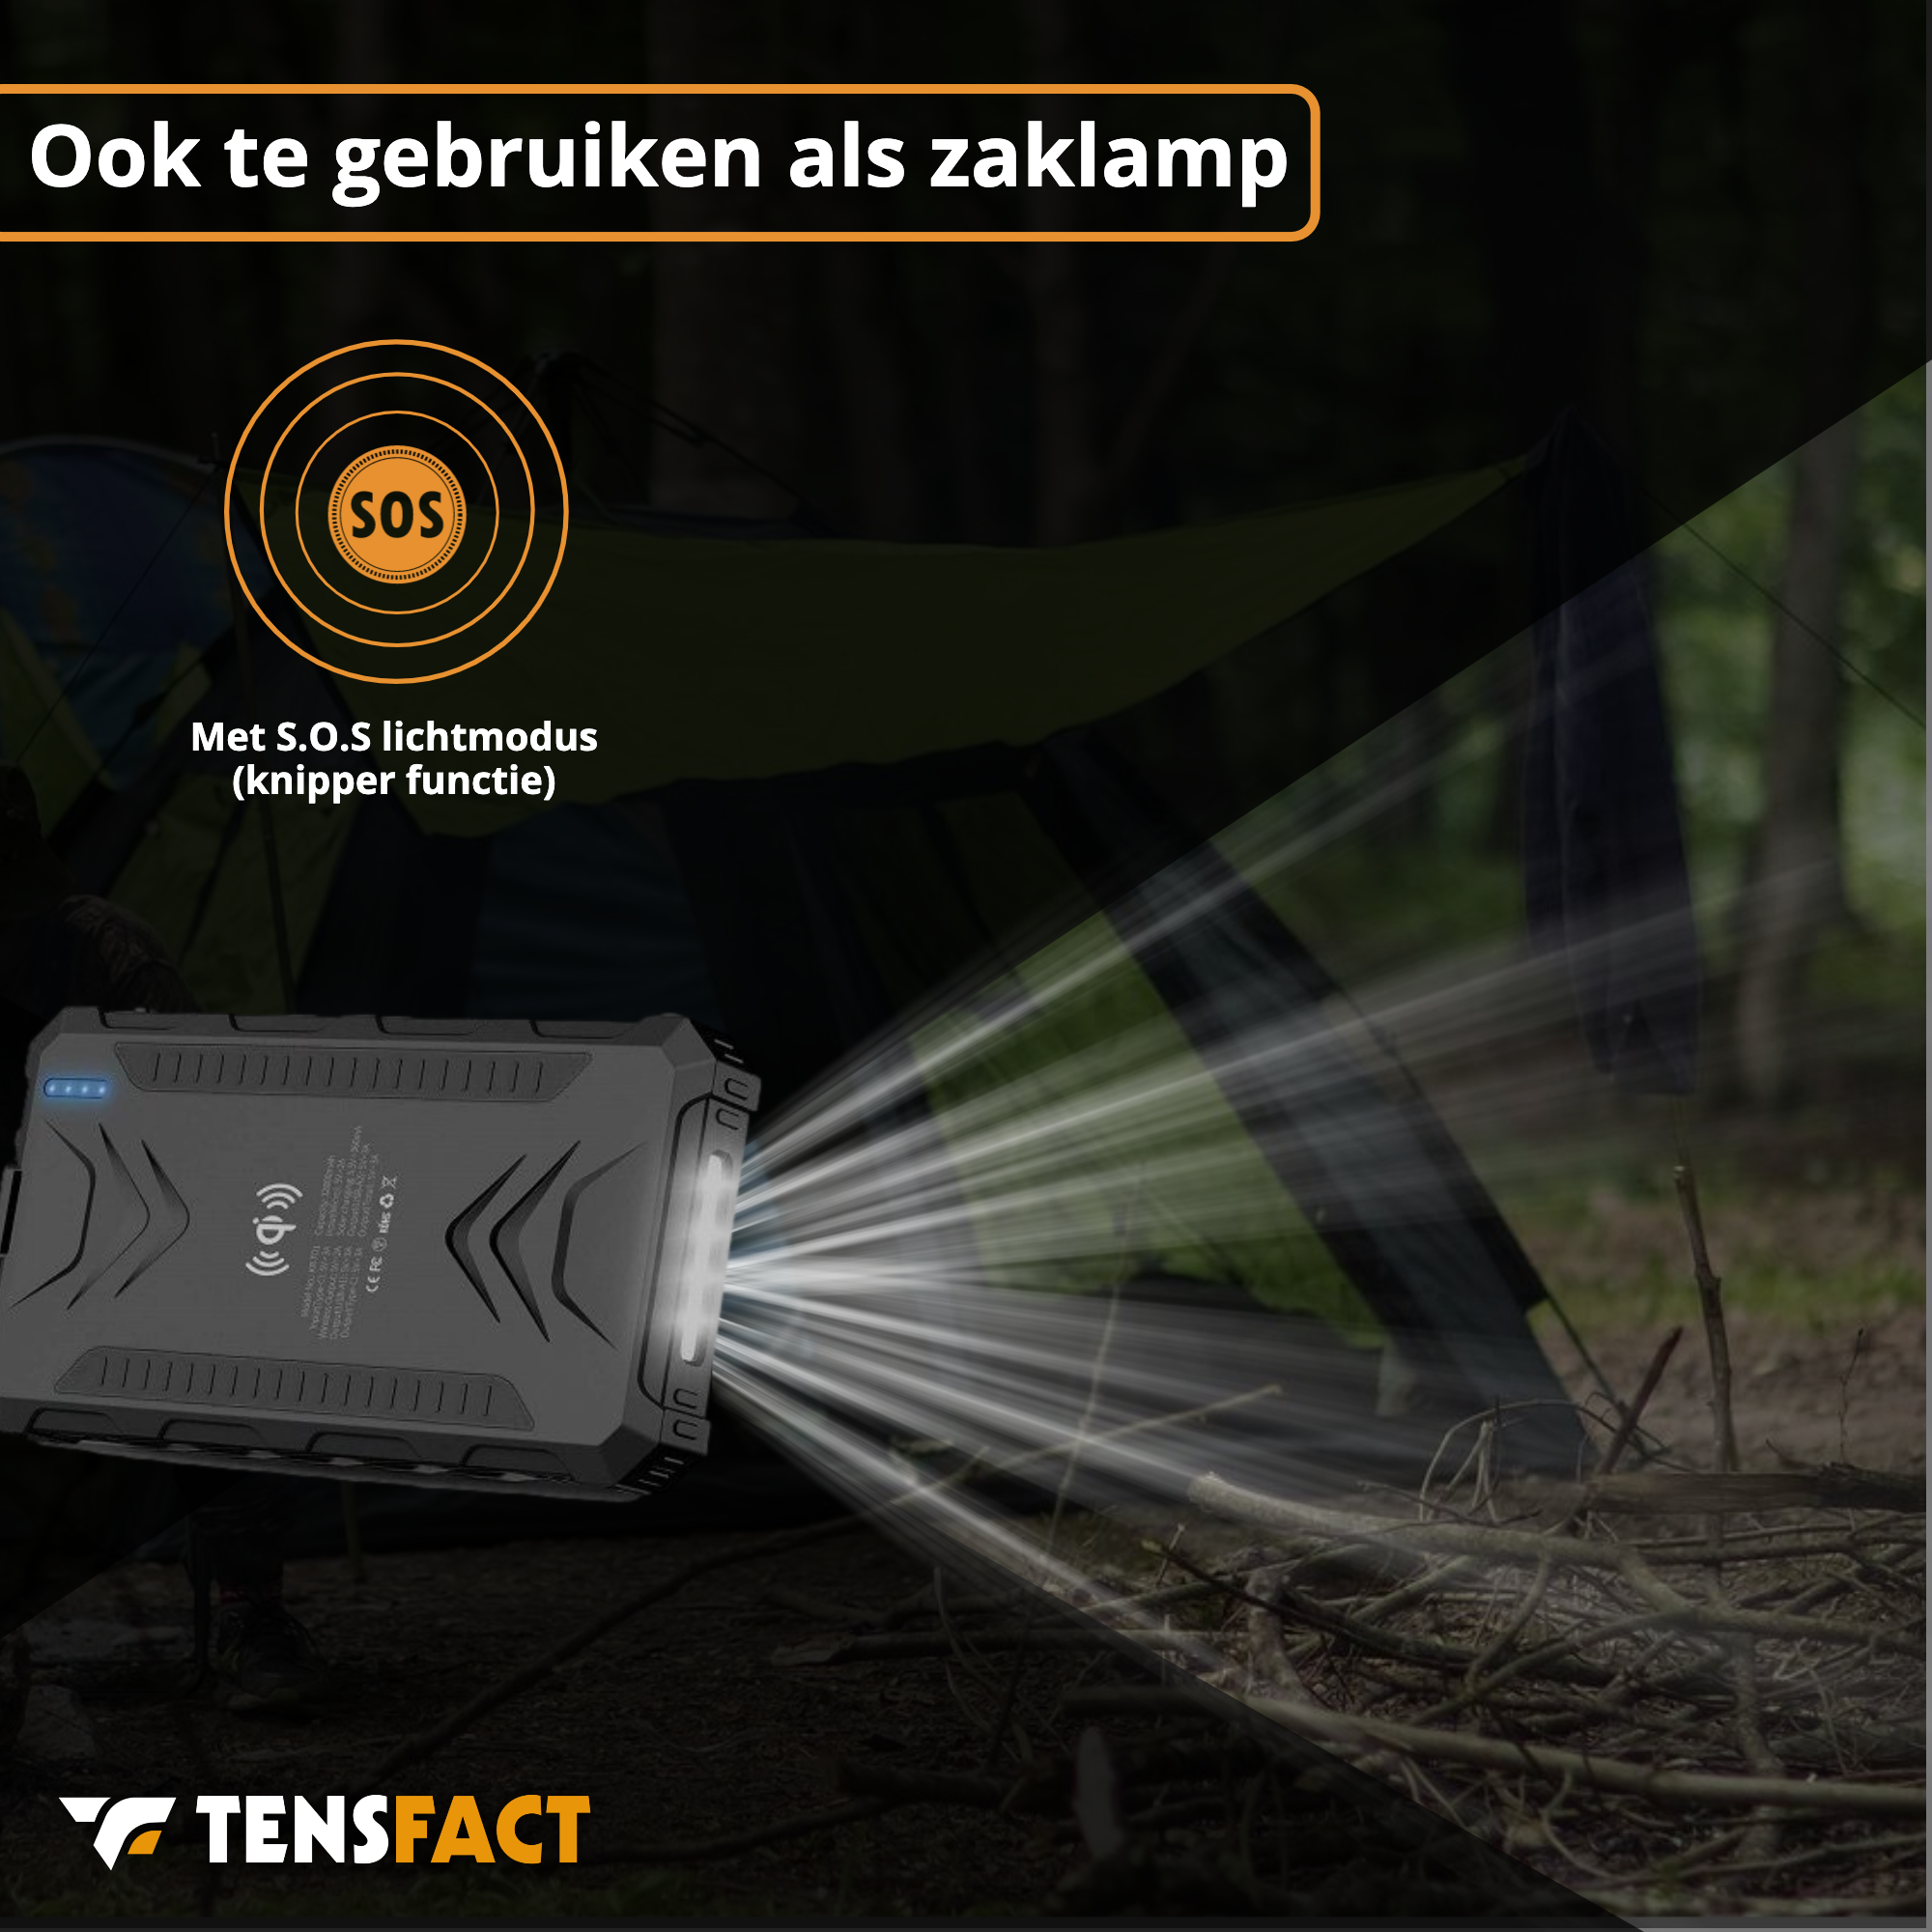 Tensfact Solar Powerbank 36000 mAh